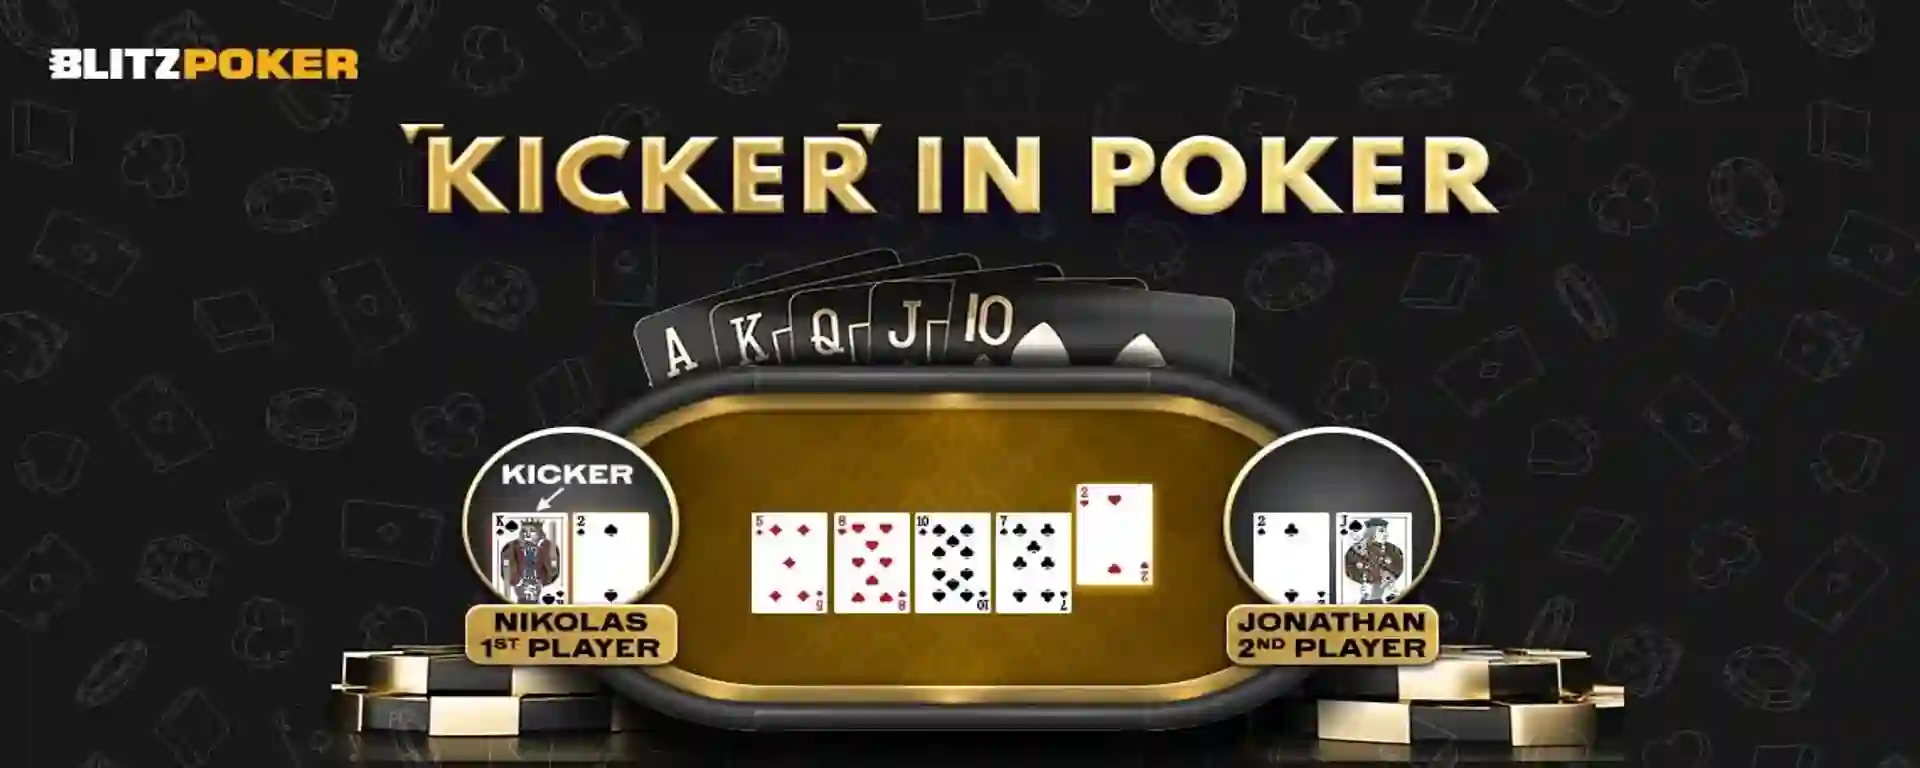 Kicker in Poker